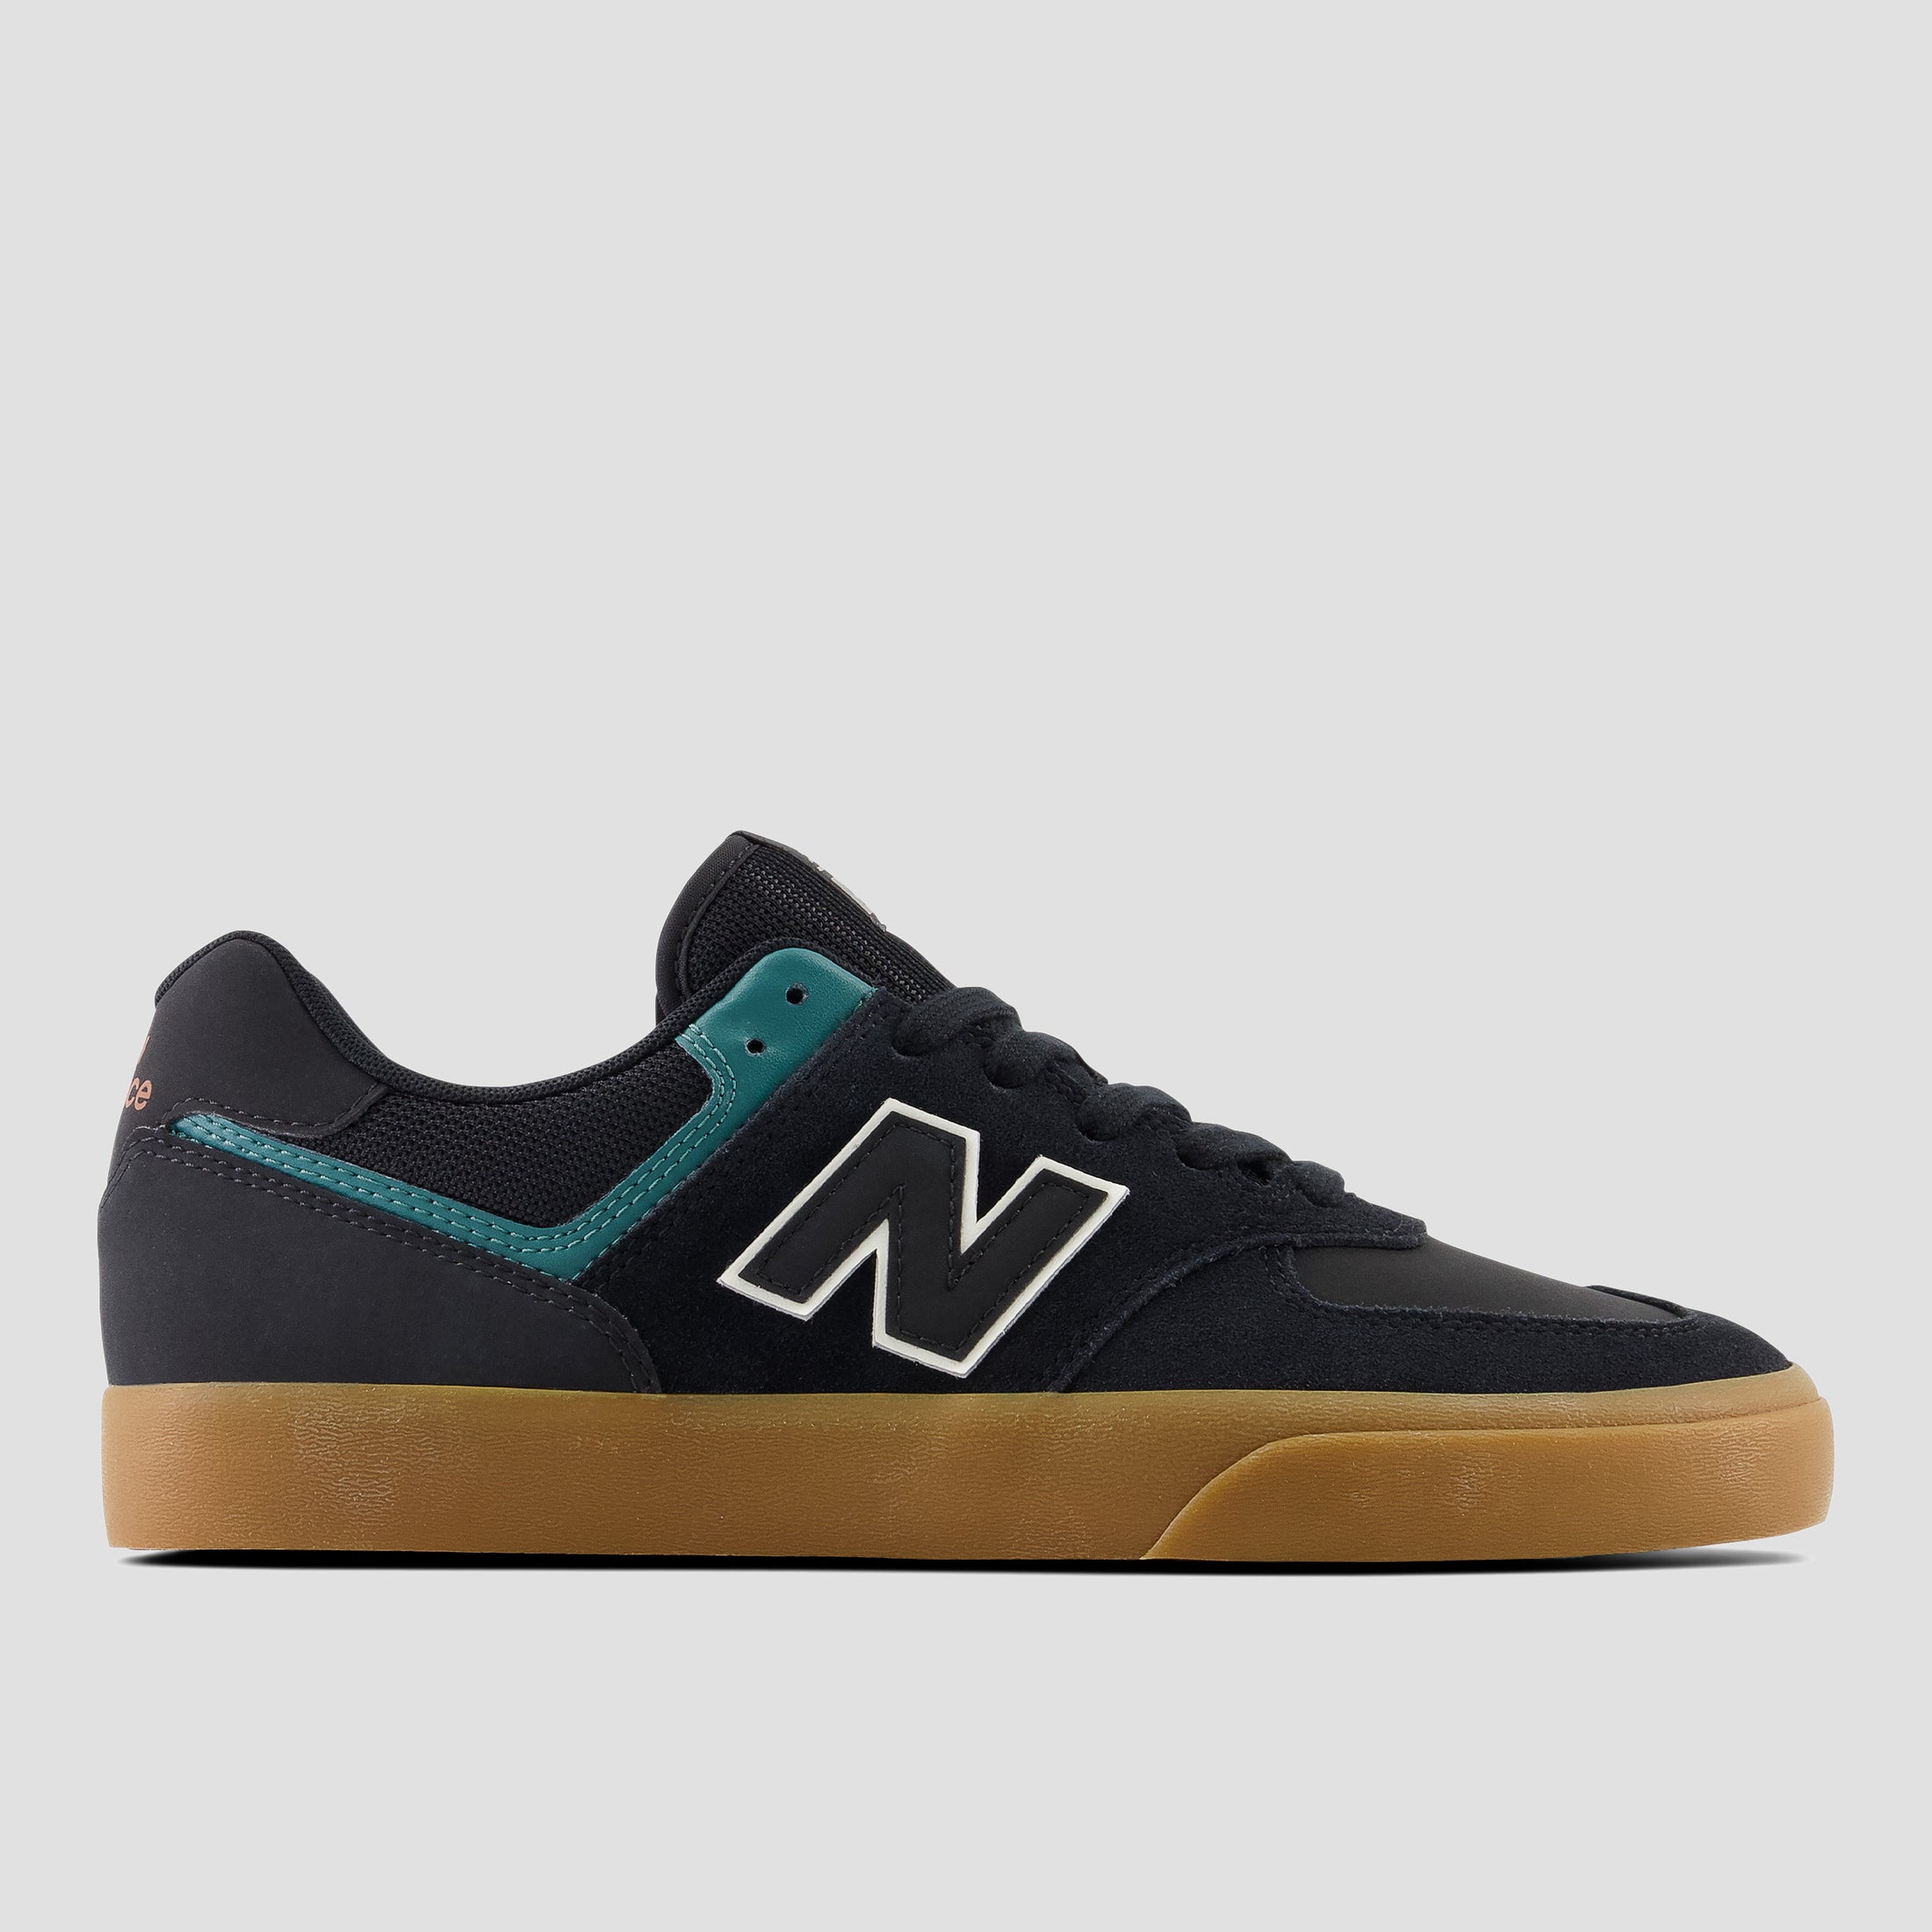 New Balance 574 Shoes Black / Vintage Teal